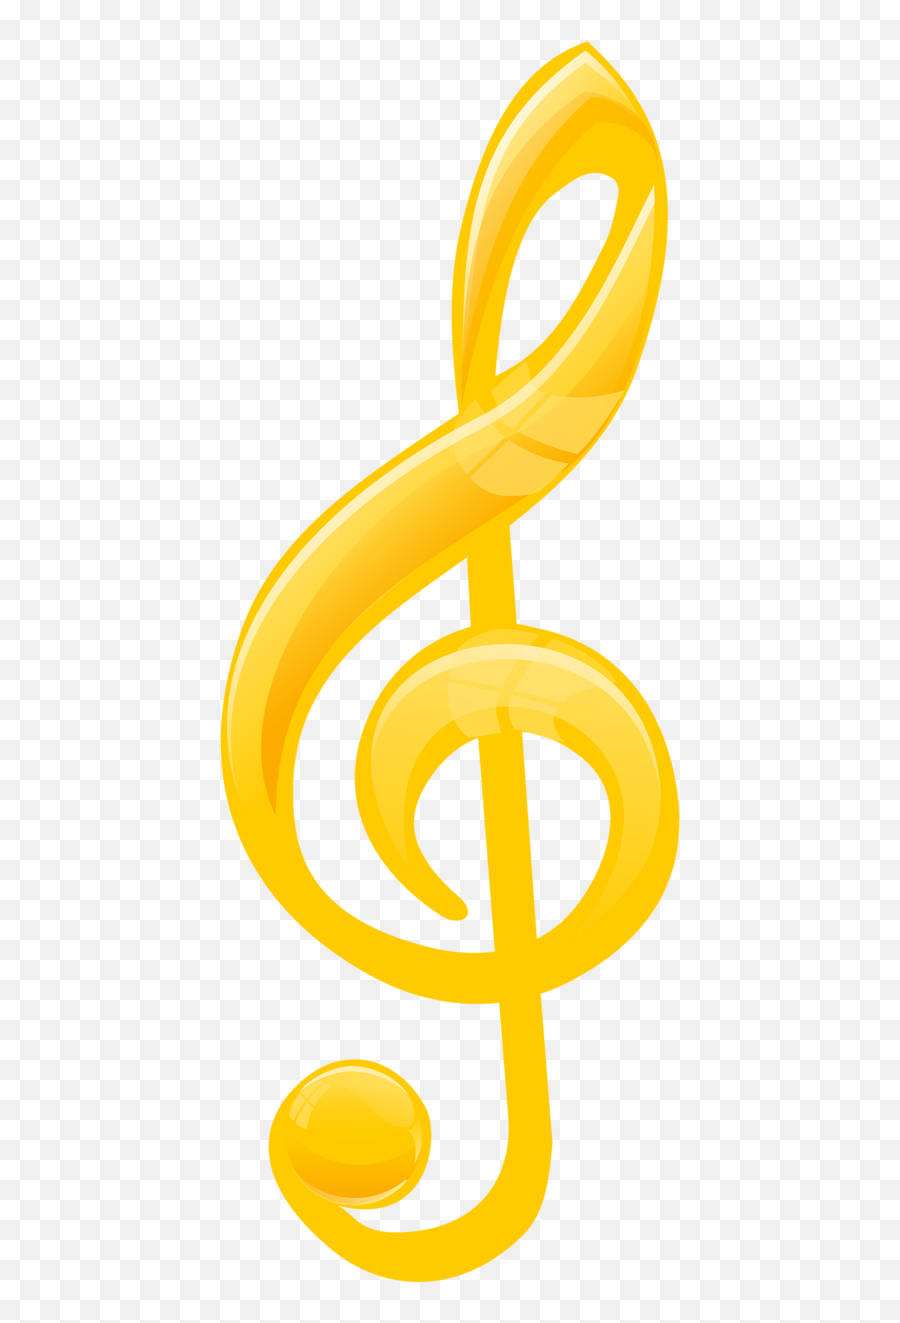 Download U2022u2022u203fu2040musicu203fu2040u2022u2022 Clipart - Gold Music Note Language Emoji,Music Note Clipart